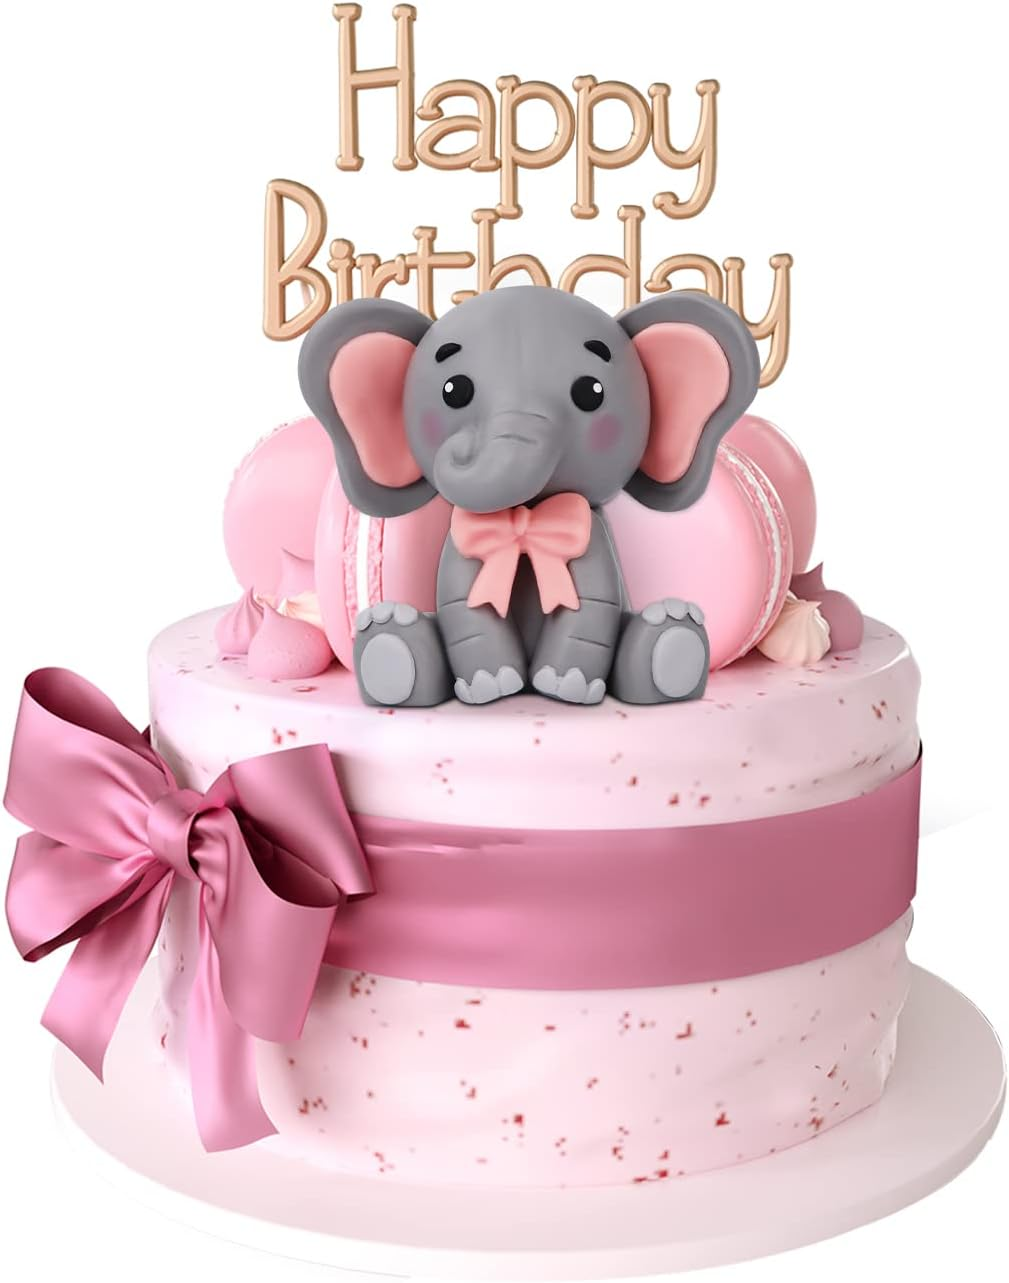 20 Amazing Elephant Baby Shower Cake Ideas